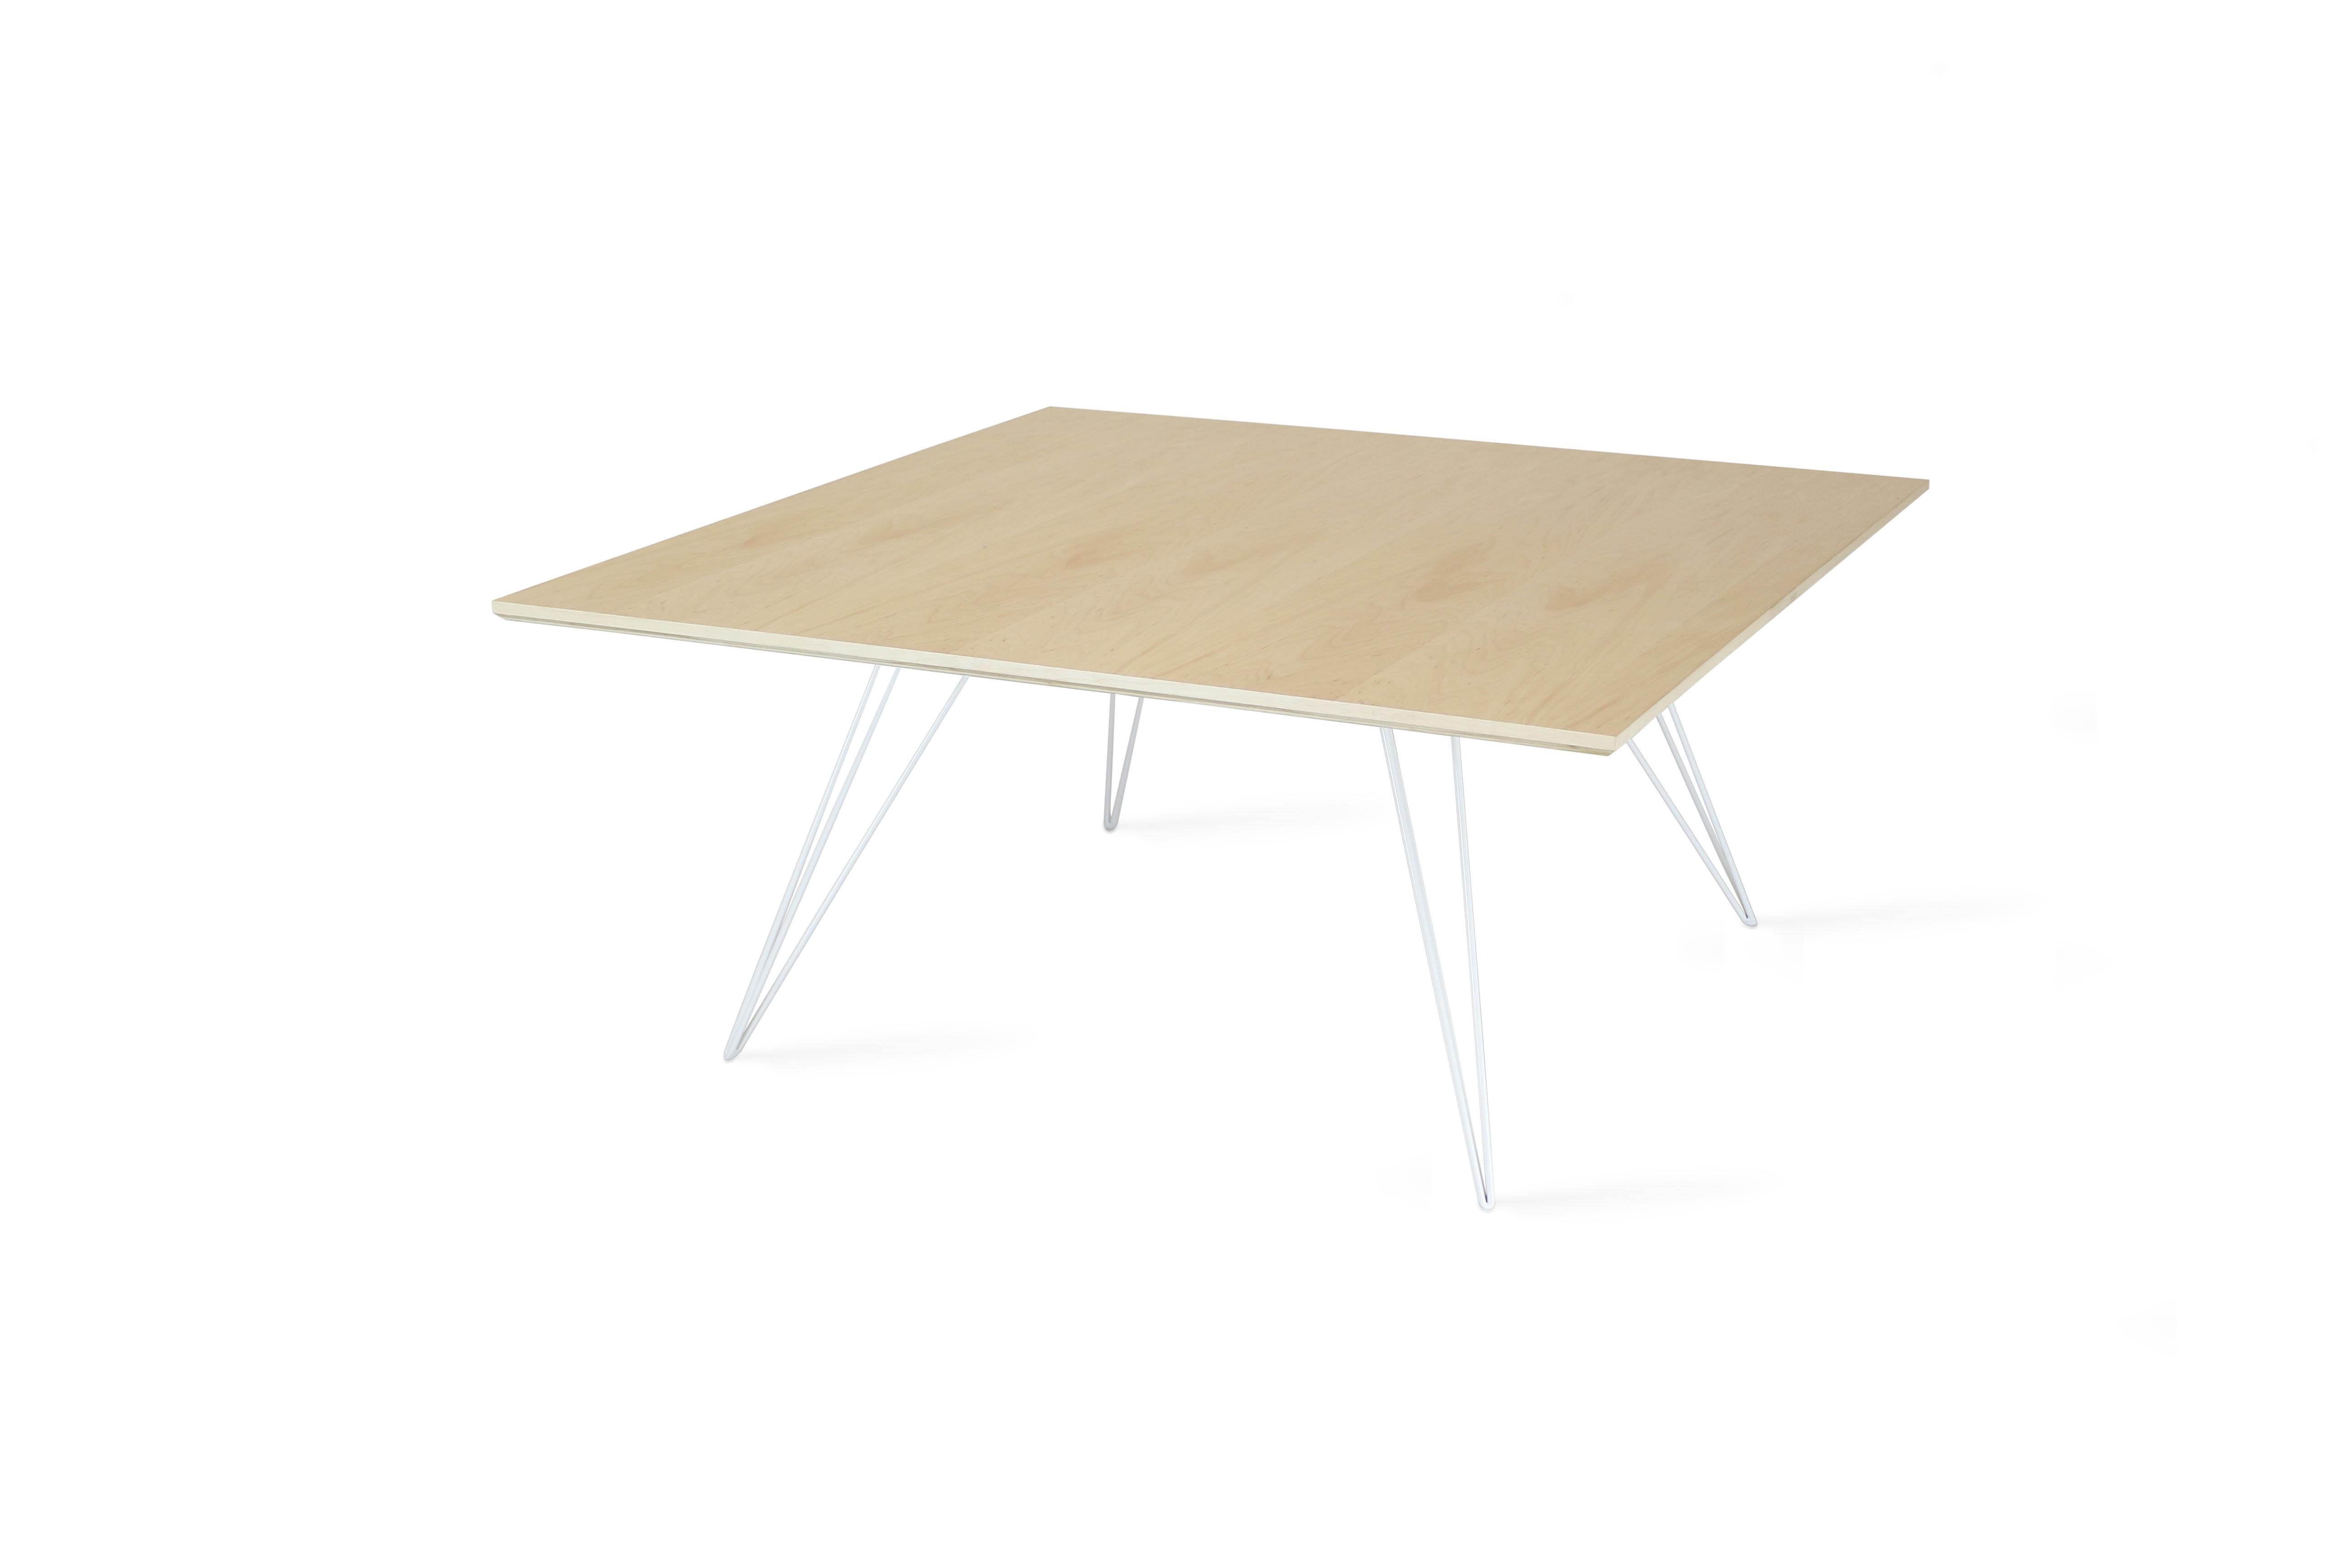 Ein schlanker, eleganter und leichter Tisch, der in Form, Größe und Farbe beliebig angepasst werden kann. Dieses handgefertigte Möbelstück kombiniert perfekt industrielle Haarnadelbeine mit einer abgeschrägten Holzplatte. Die unregelmäßige Schönheit